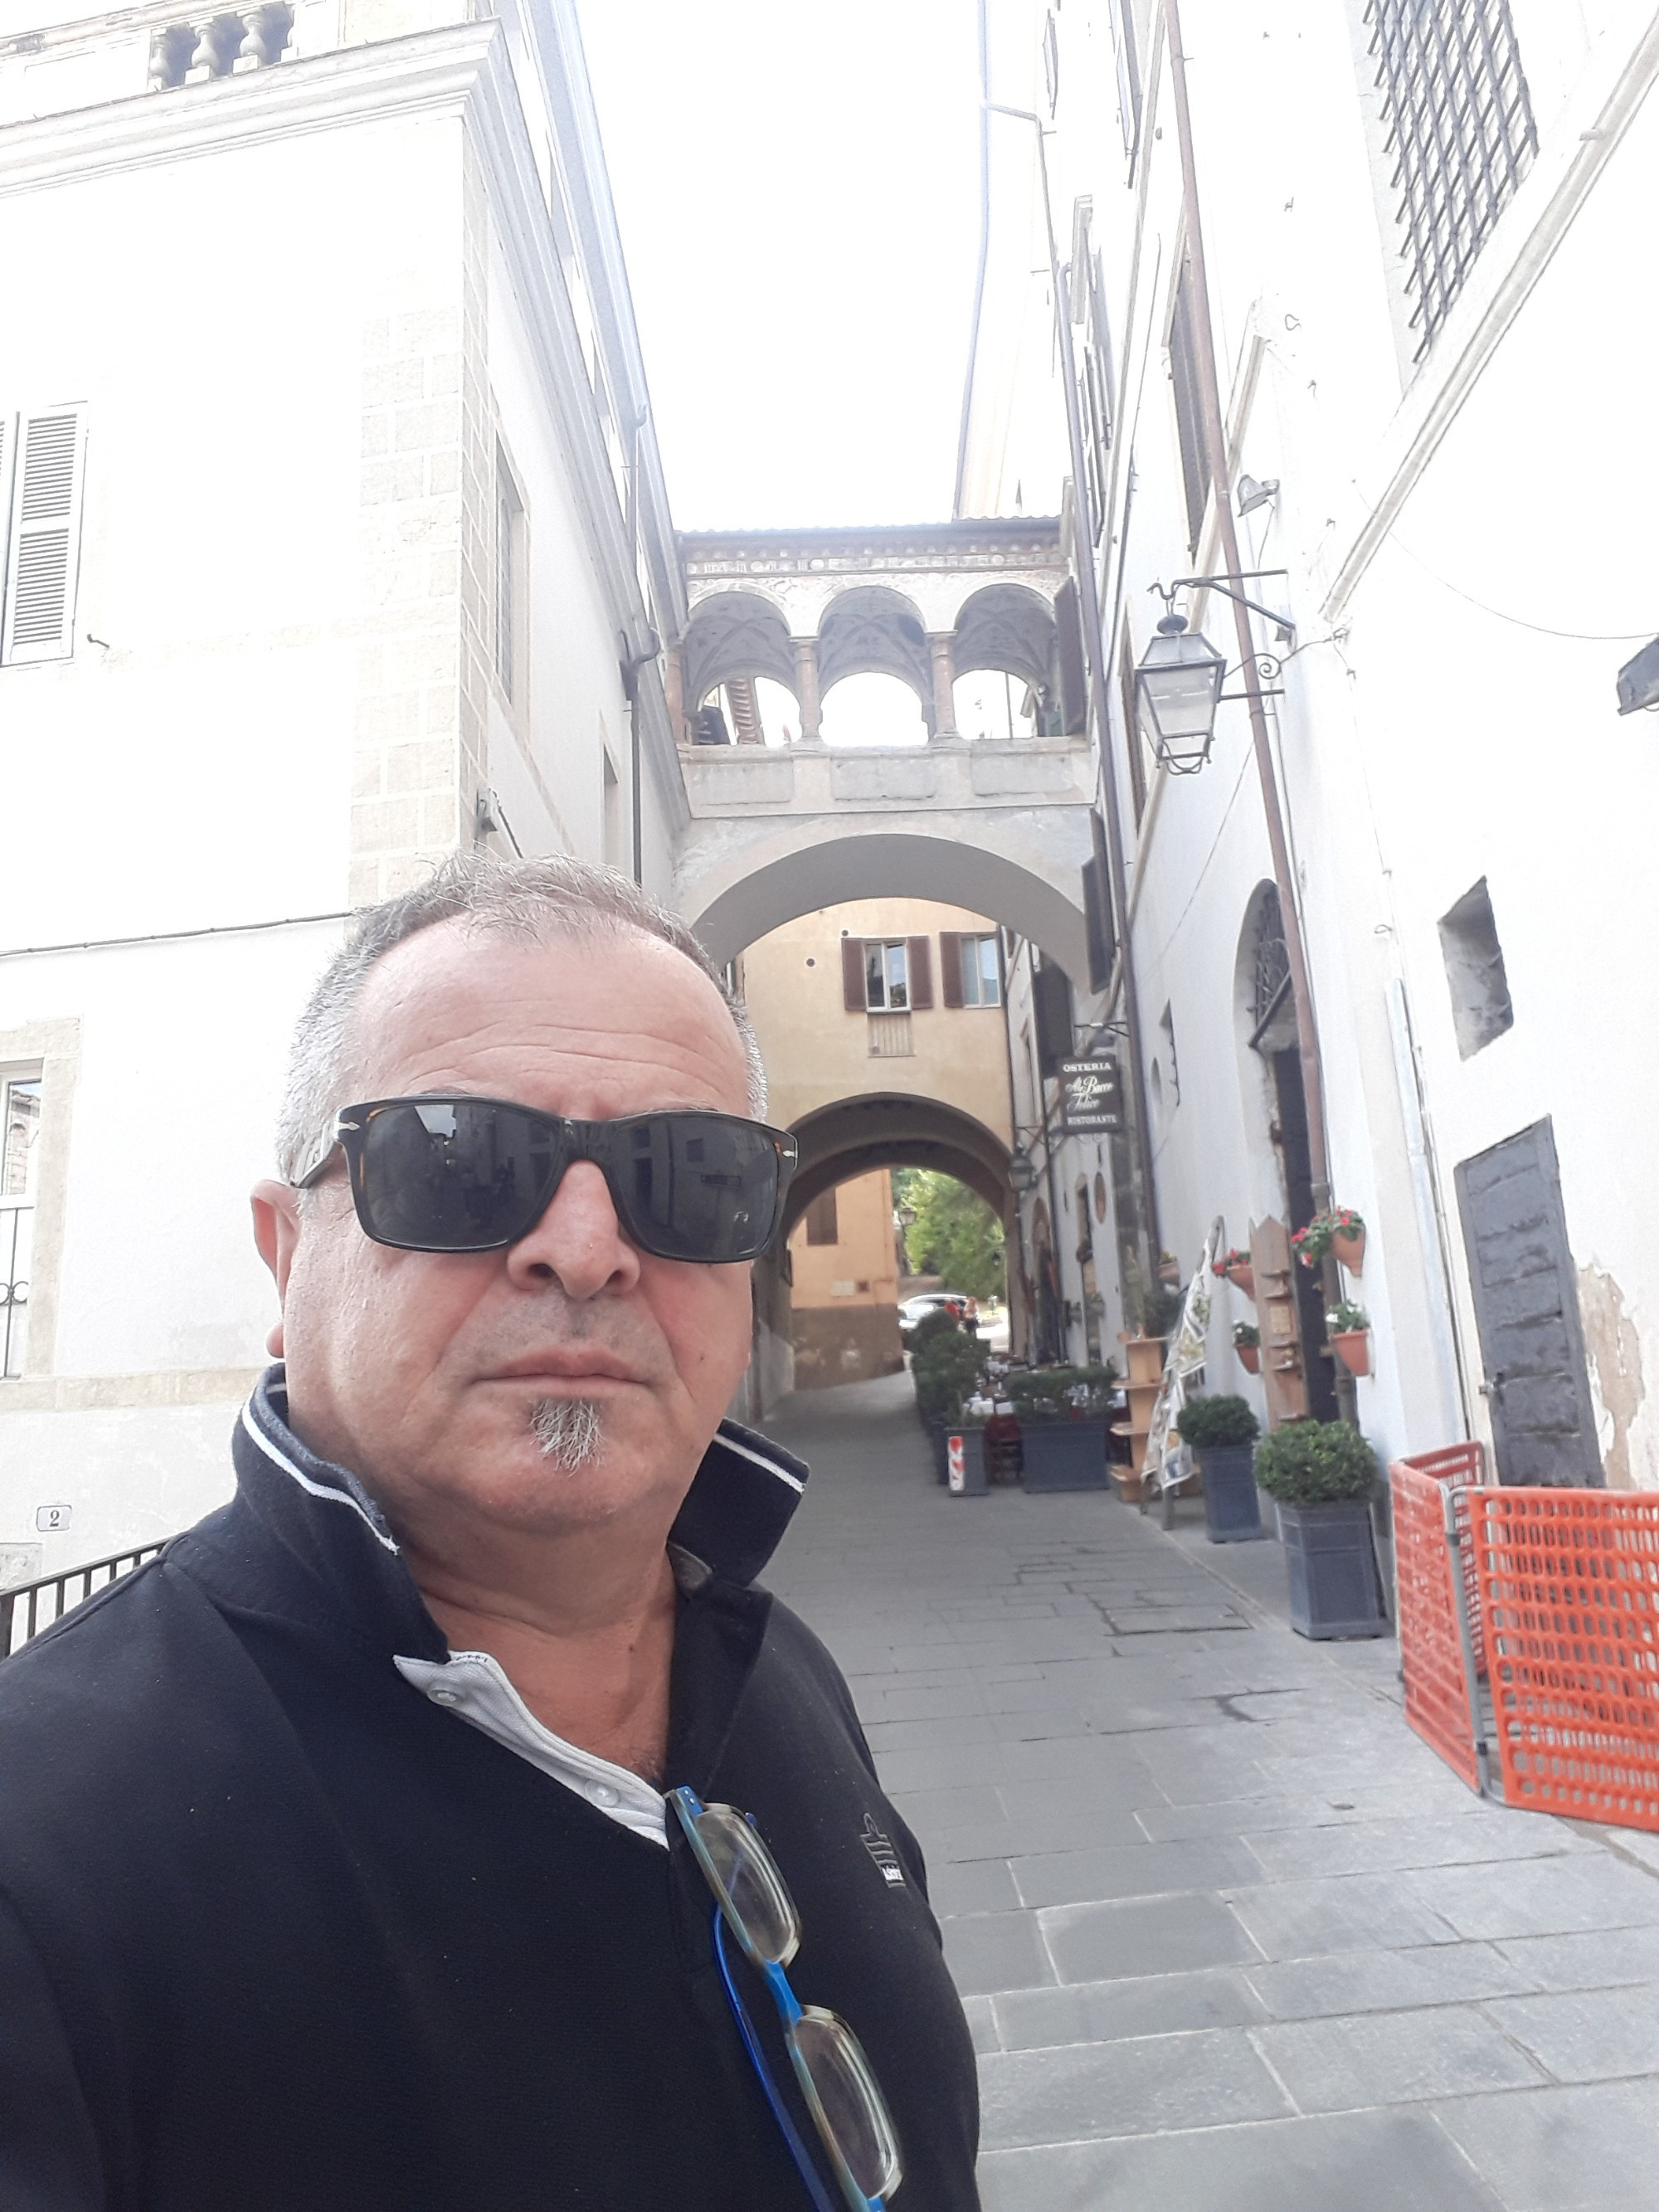 Spoleto, Italy